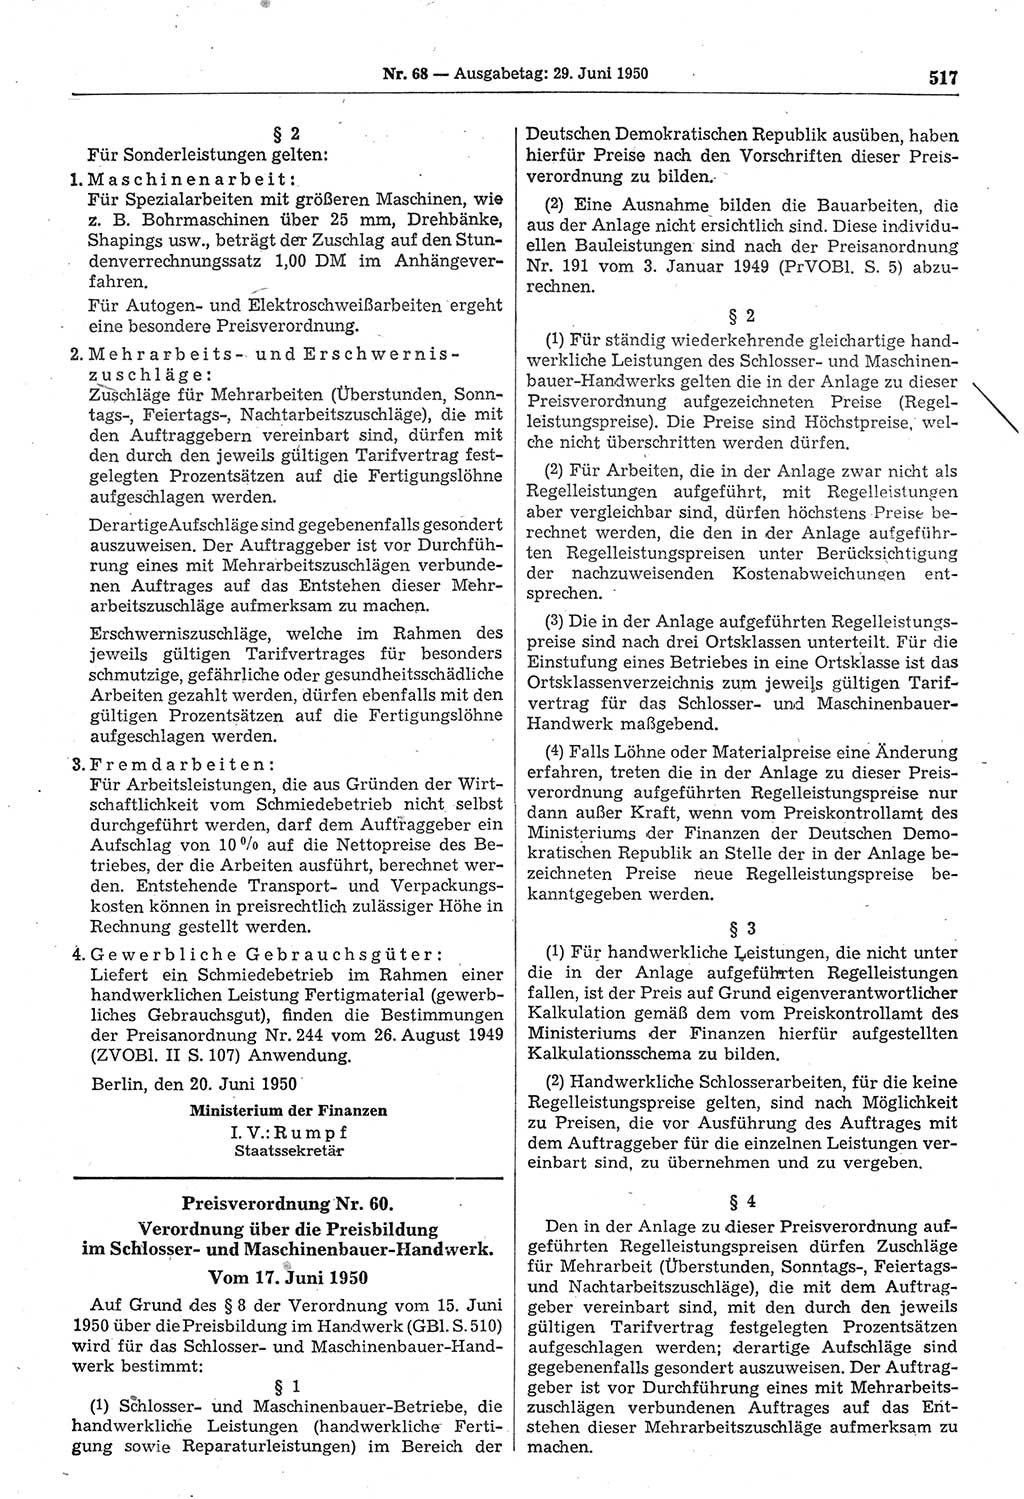 Gesetzblatt (GBl.) der Deutschen Demokratischen Republik (DDR) 1950, Seite 517 (GBl. DDR 1950, S. 517)